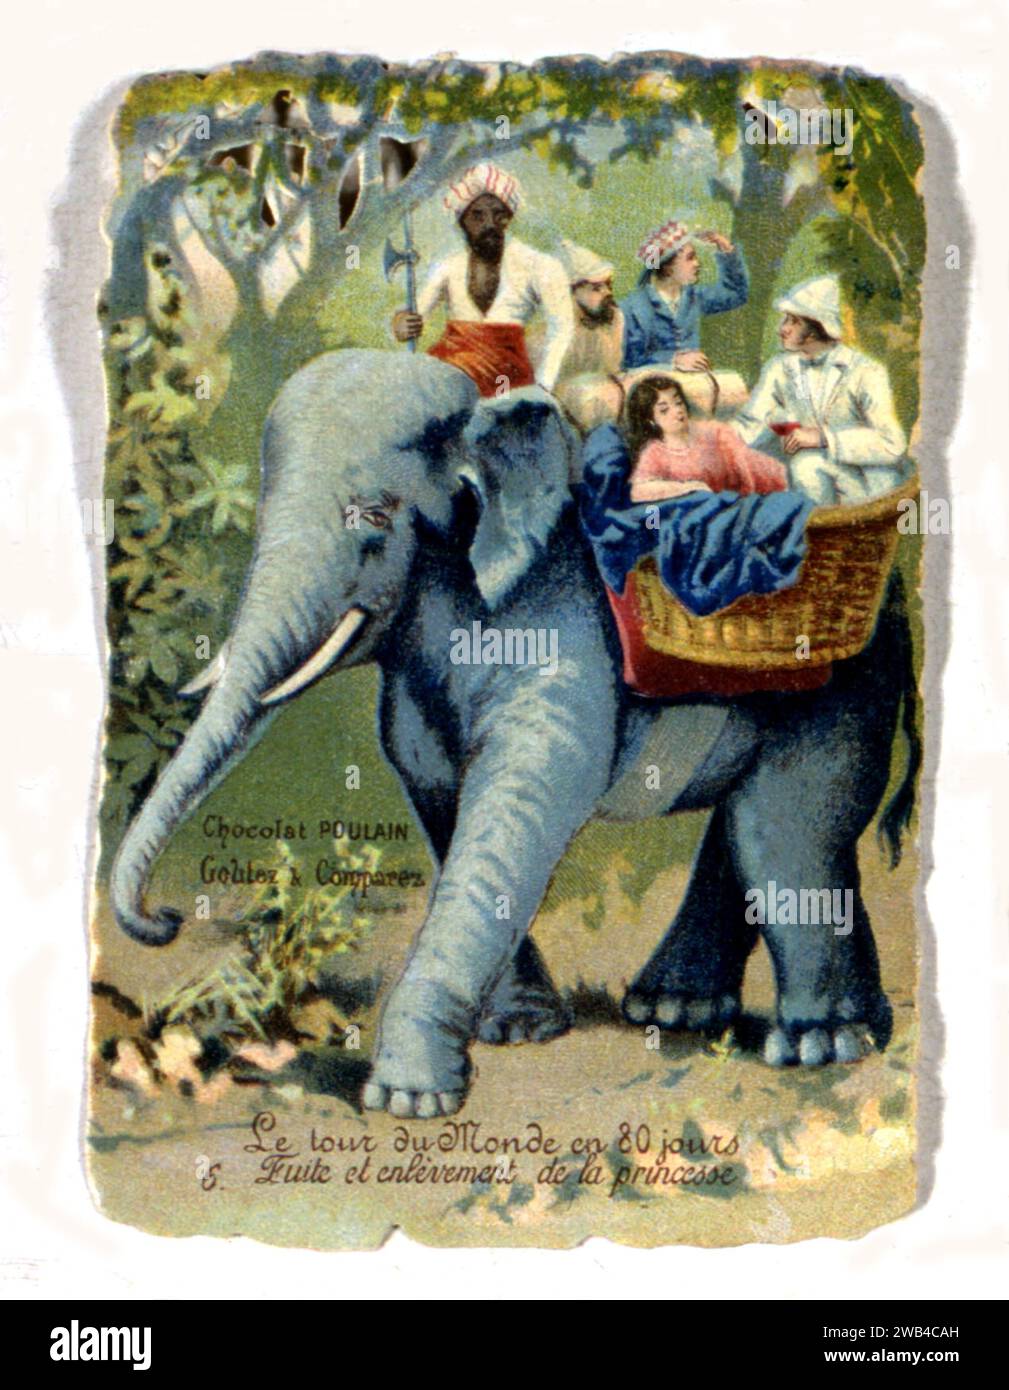 Le tour du monde en 80 jours - Jules Verne - Aux Deux Eléphants